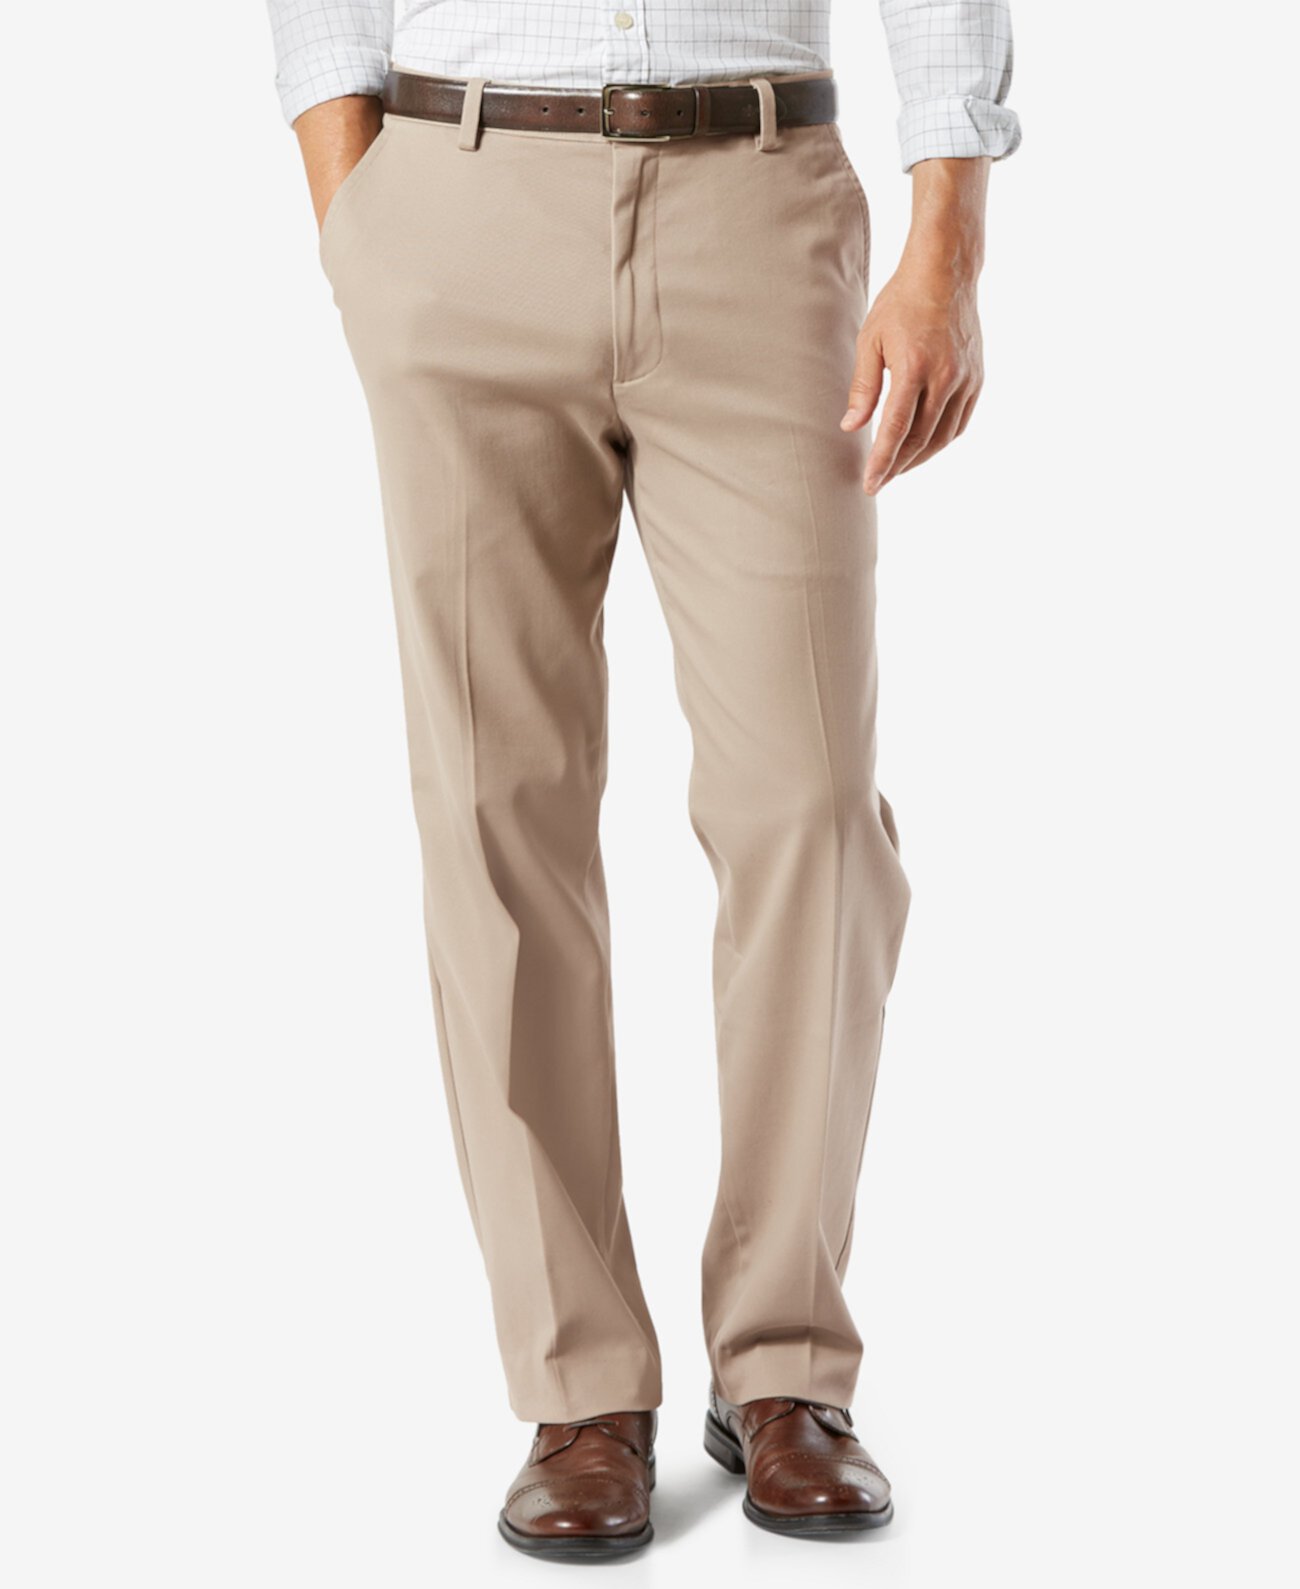 Мужские брюки стрейч цвета хаки легкого кроя классического кроя для больших и высоких Dockers